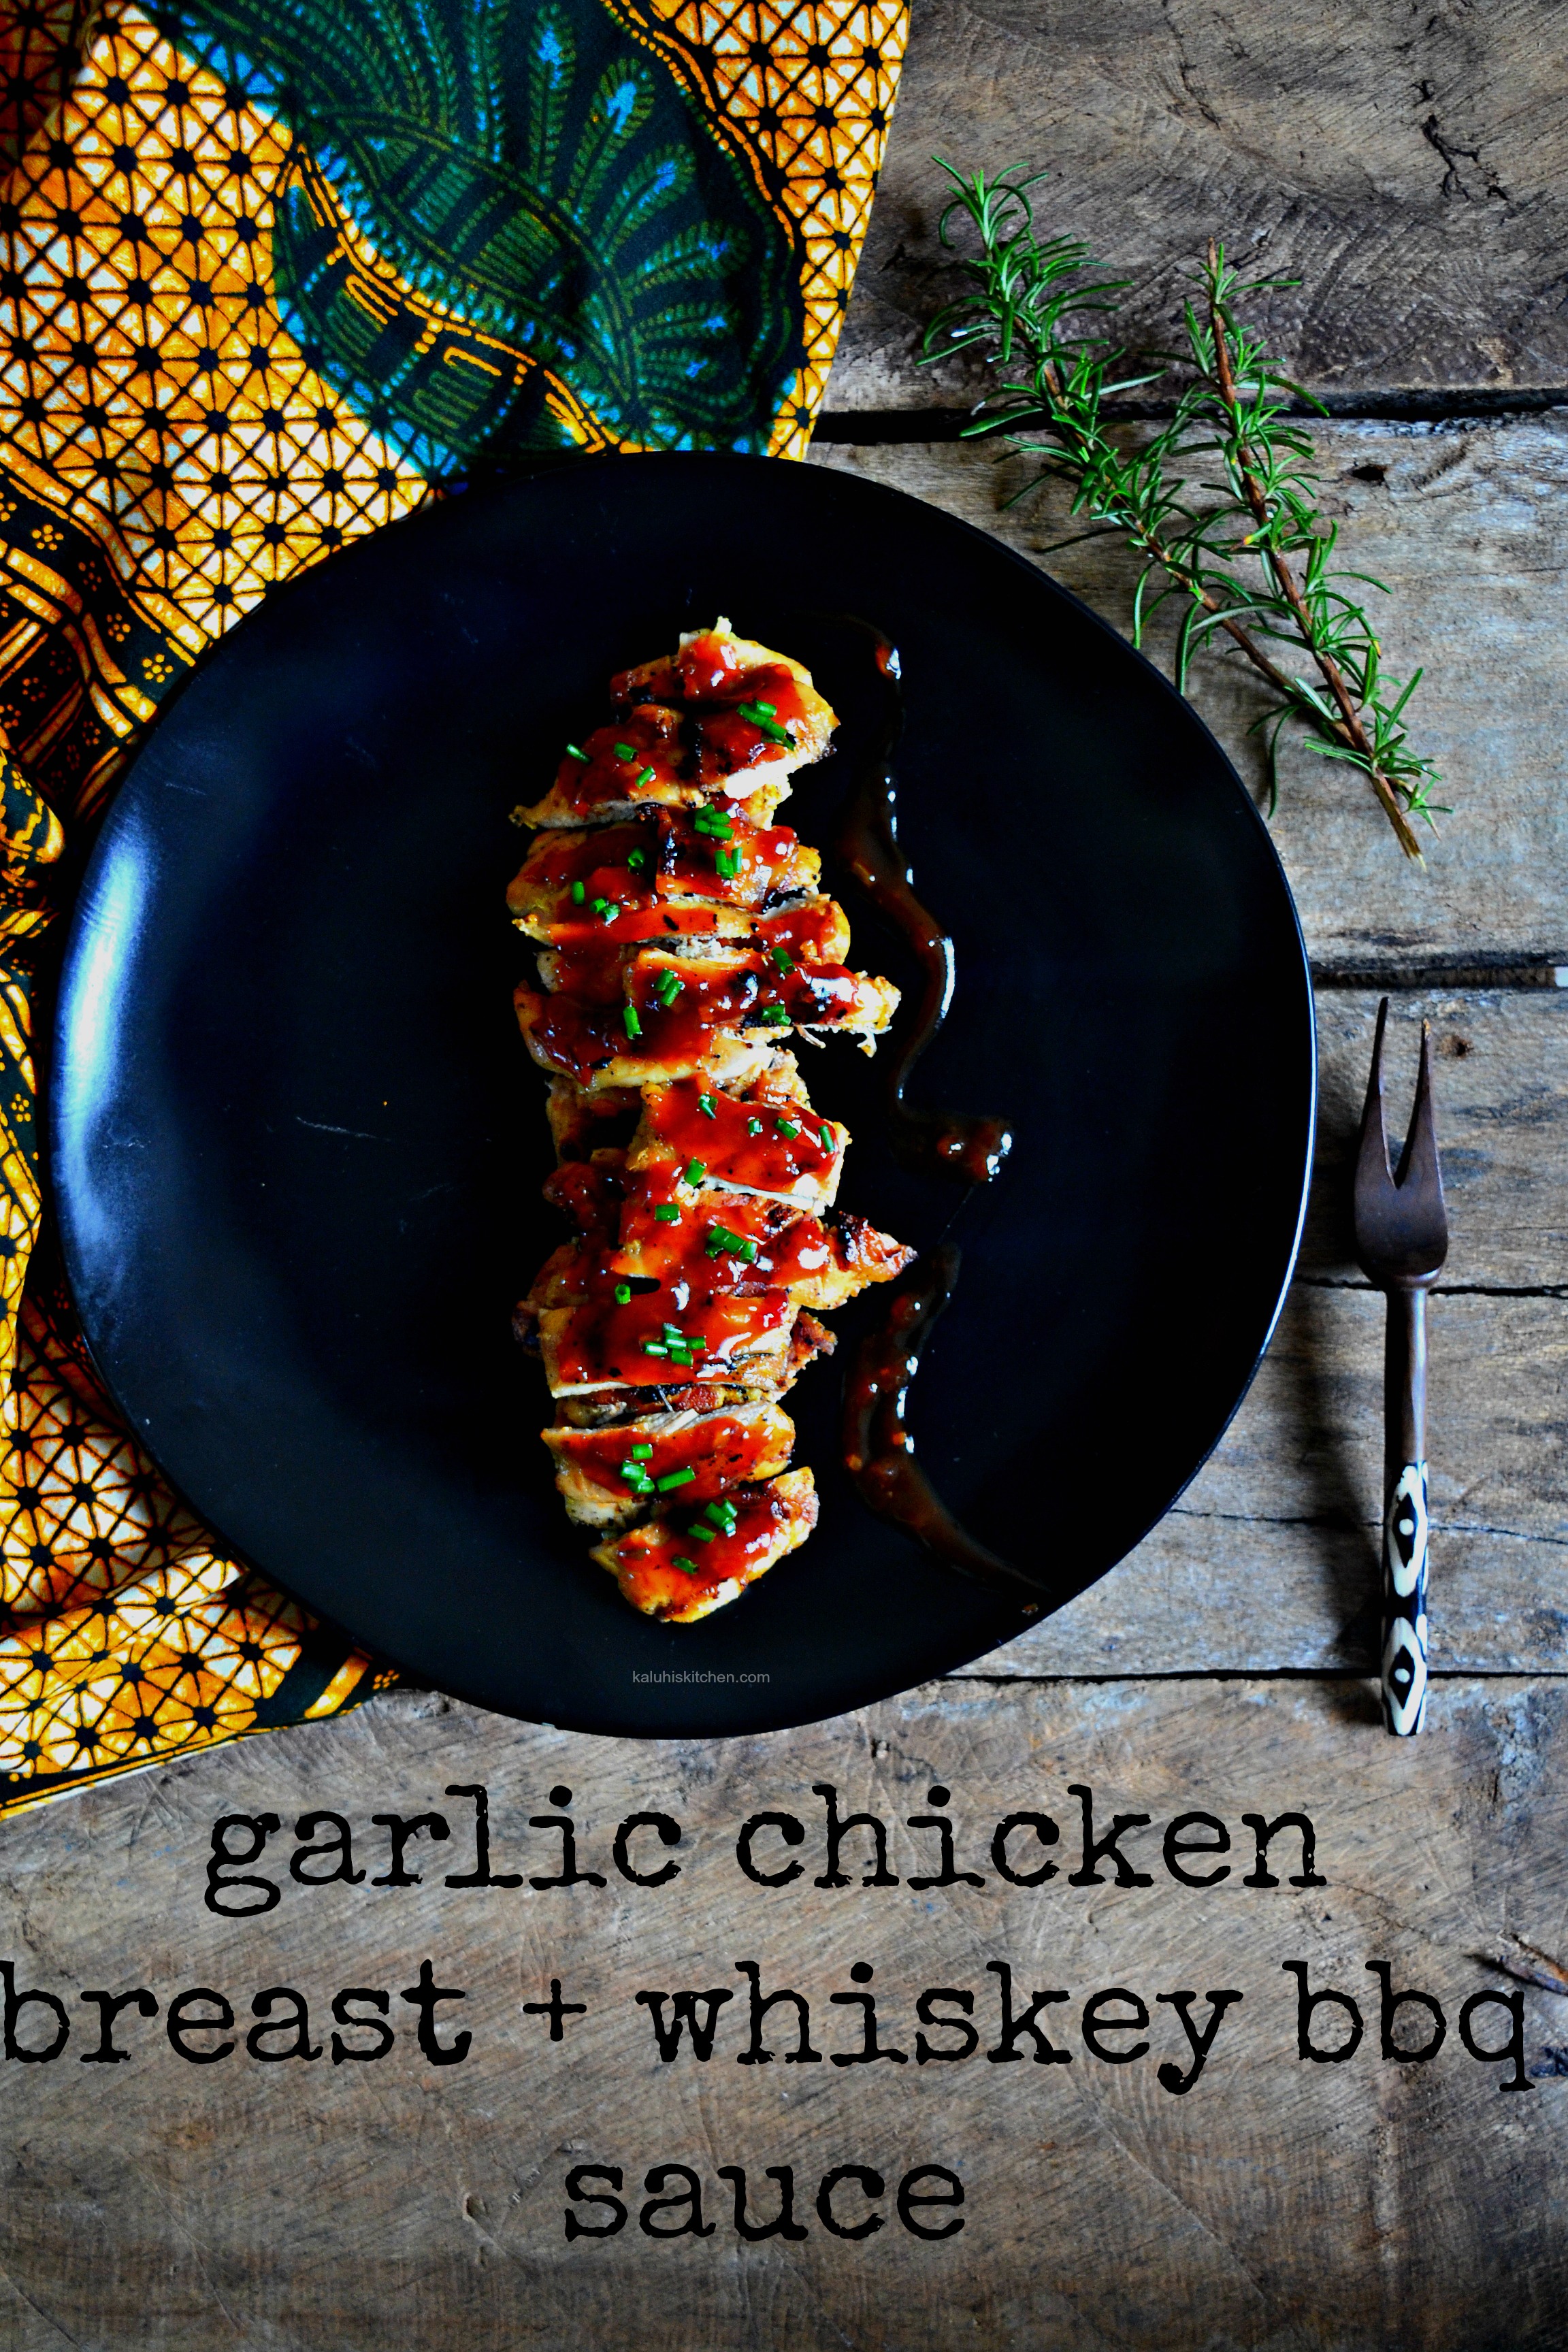 garlic chicken breast with whiskey bbq sauce_how to make chicken breast moist_how to cook chicken breast_kaluhiskitchen.com